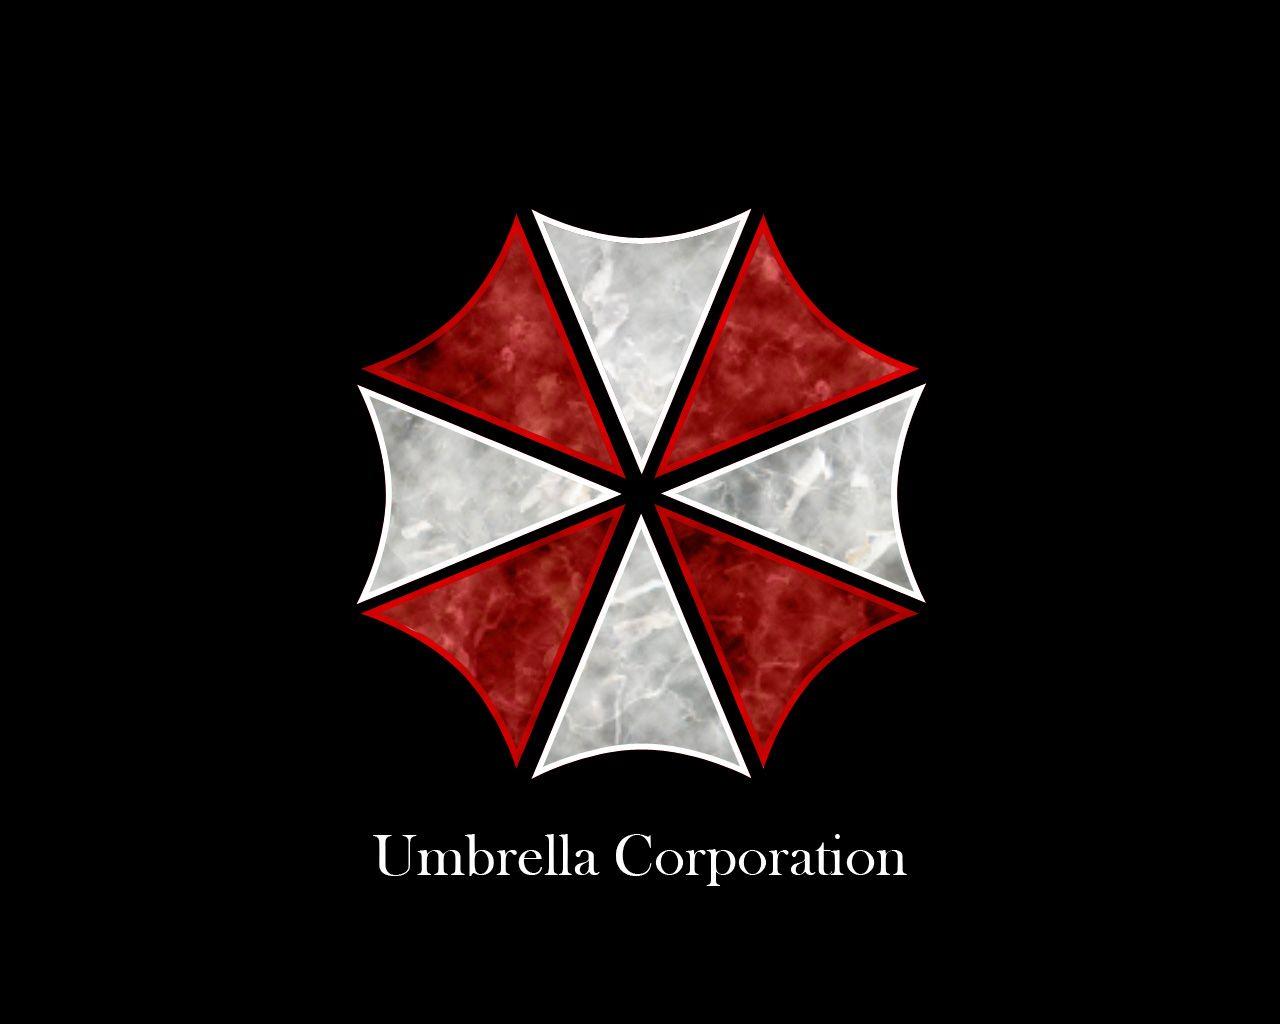 Umbrella Company Logo - Umbrella Corporation logo. Photohop Tutorials Designstacks